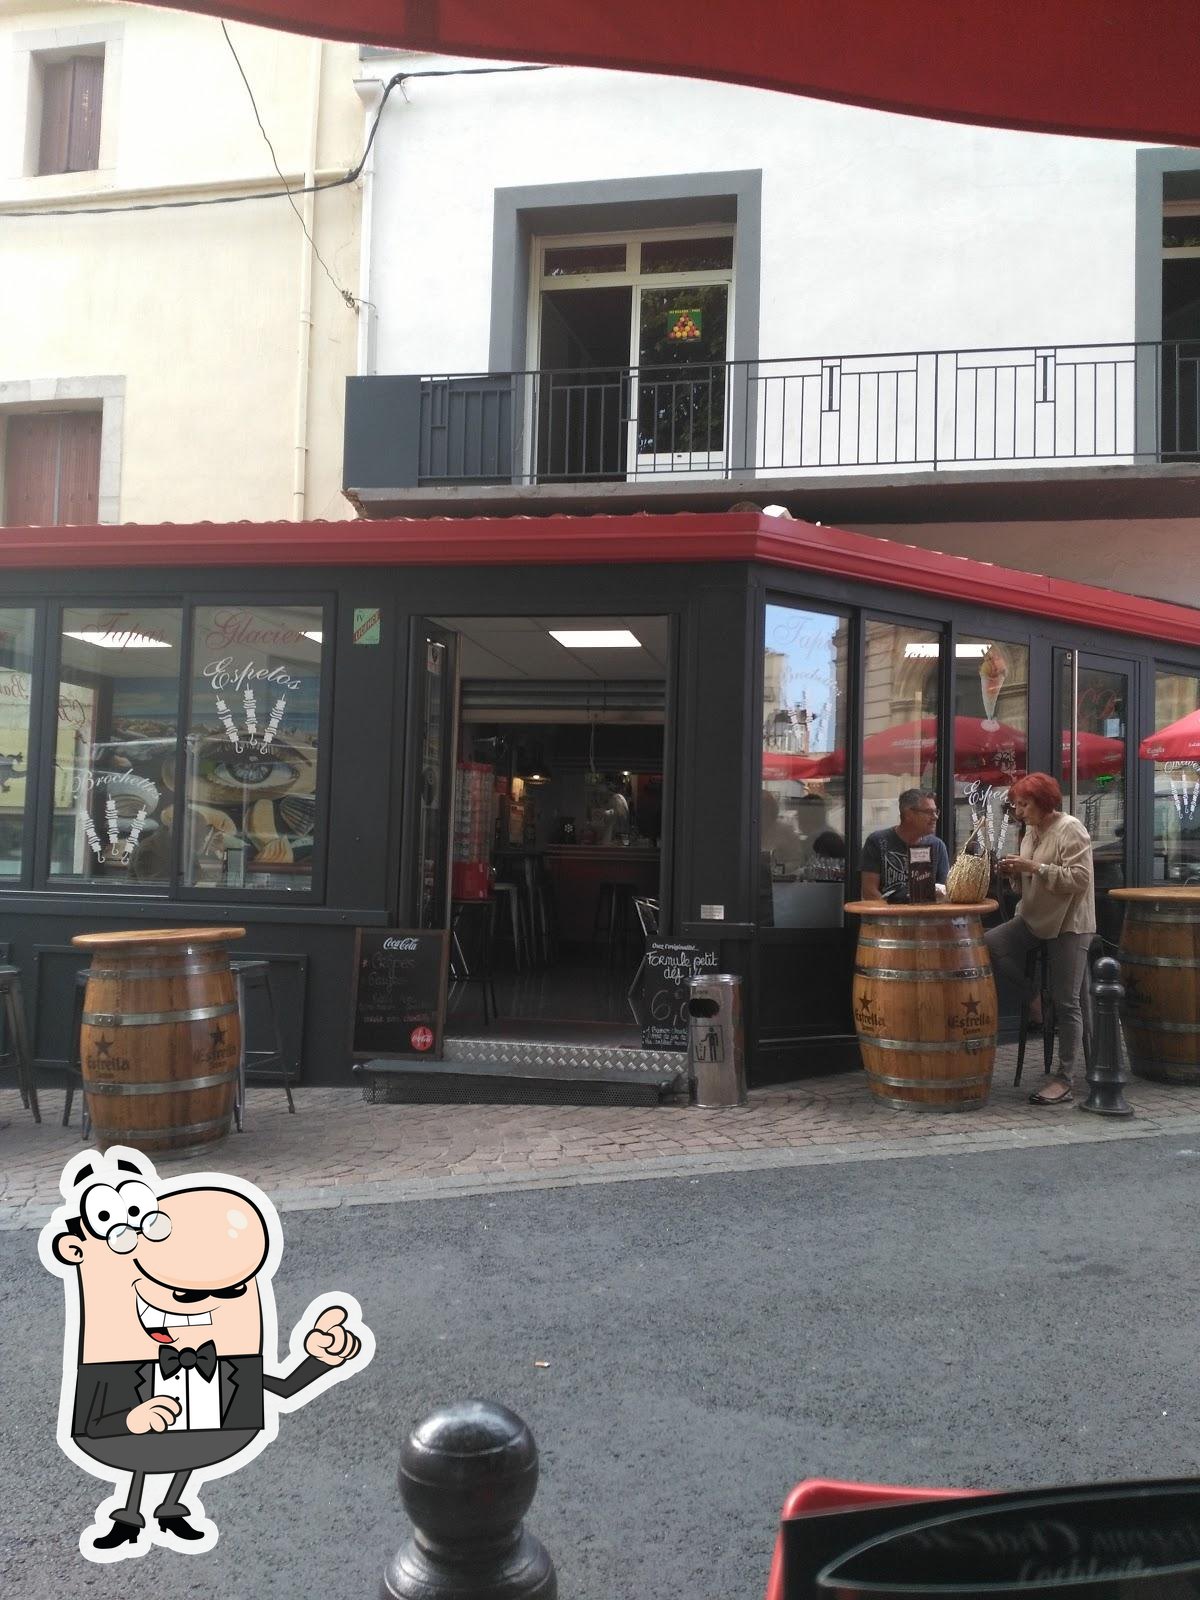 Le Central Bar Restaurant, Frontignan - Critiques de restaurant